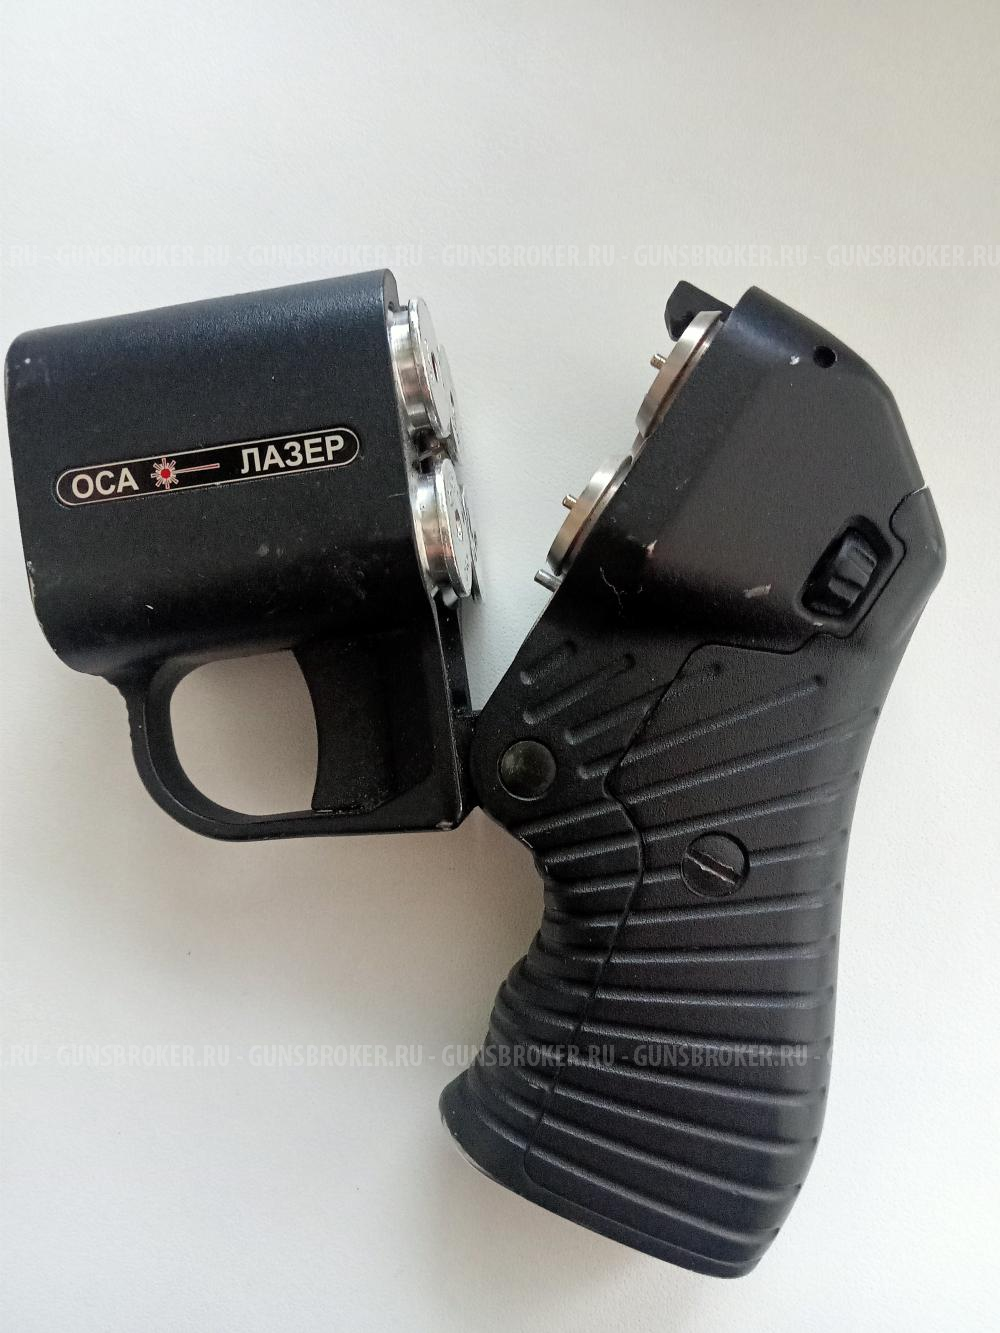  Пистолет ОСА,с лазерным прицелом калибр 18*45